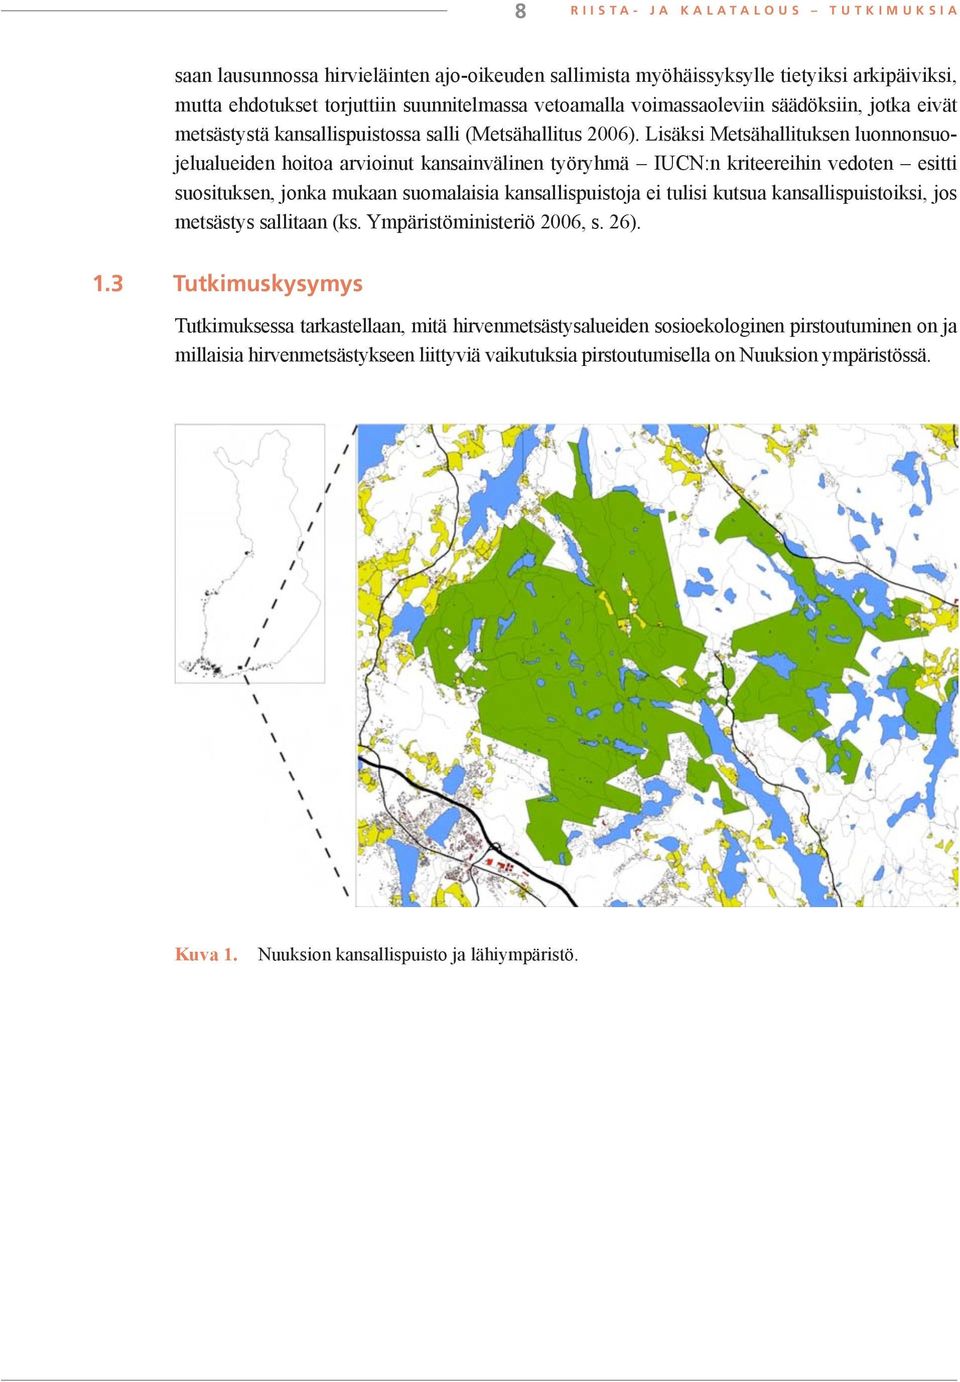 Lisäksi Metsähallituksen luonnonsuojelualueiden hoitoa arvioinut kansainvälinen työryhmä IUCN:n kriteereihin vedoten esitti suosituksen, jonka mukaan suomalaisia kansallispuistoja ei tulisi kutsua